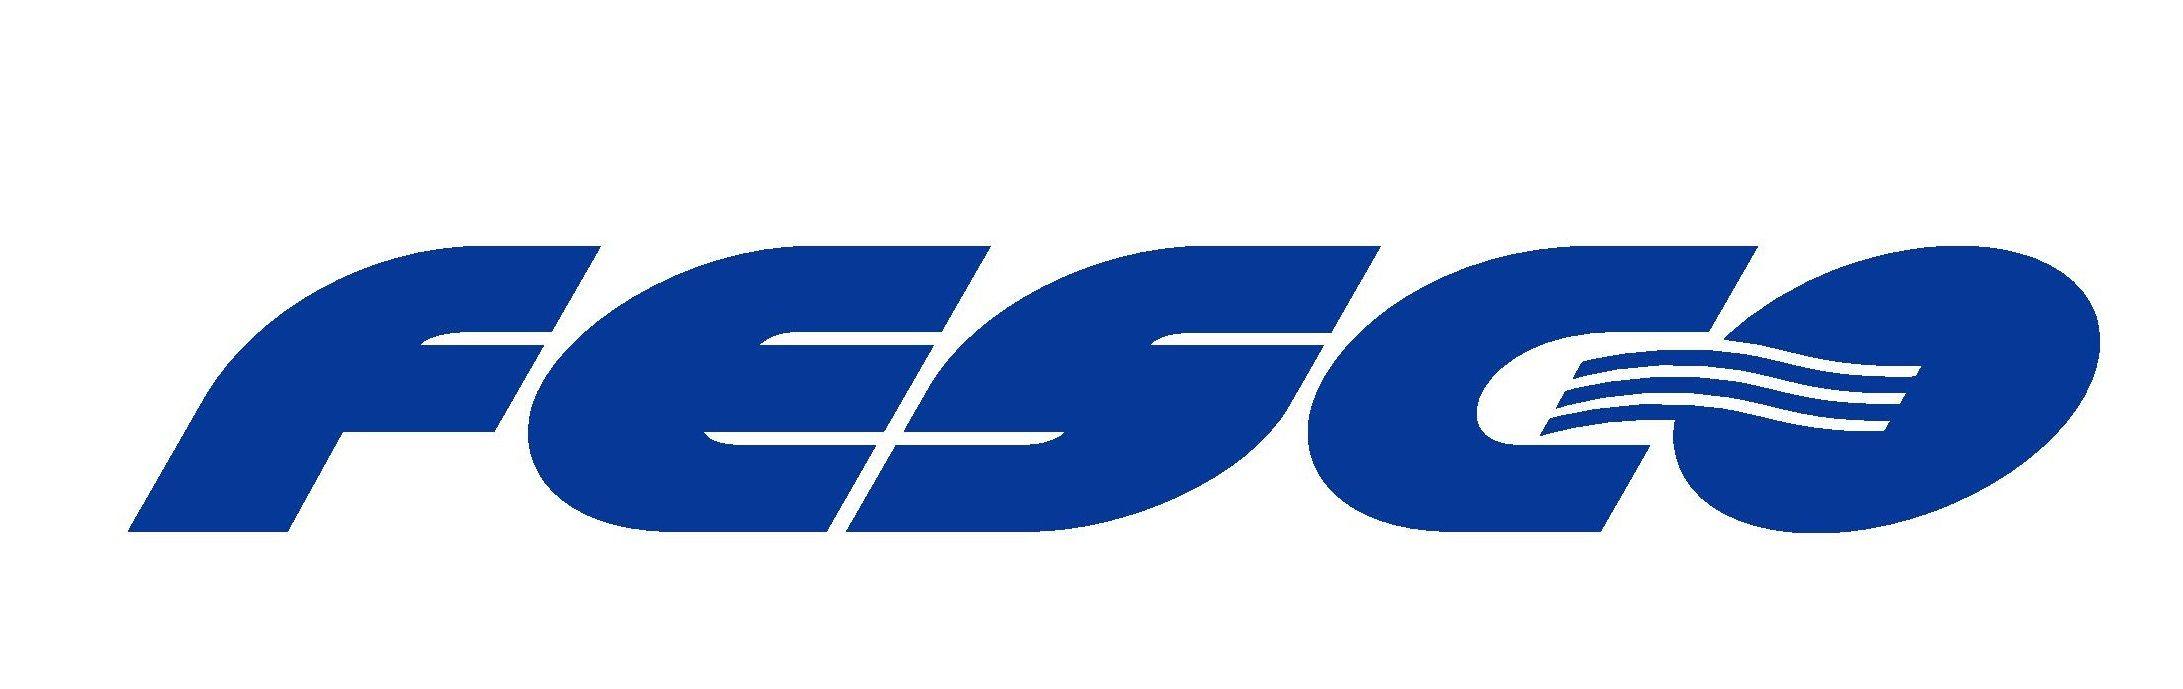 FESCO Logo - Questionnaire for FESCO Business Lunch Participants FESCO 与您同行